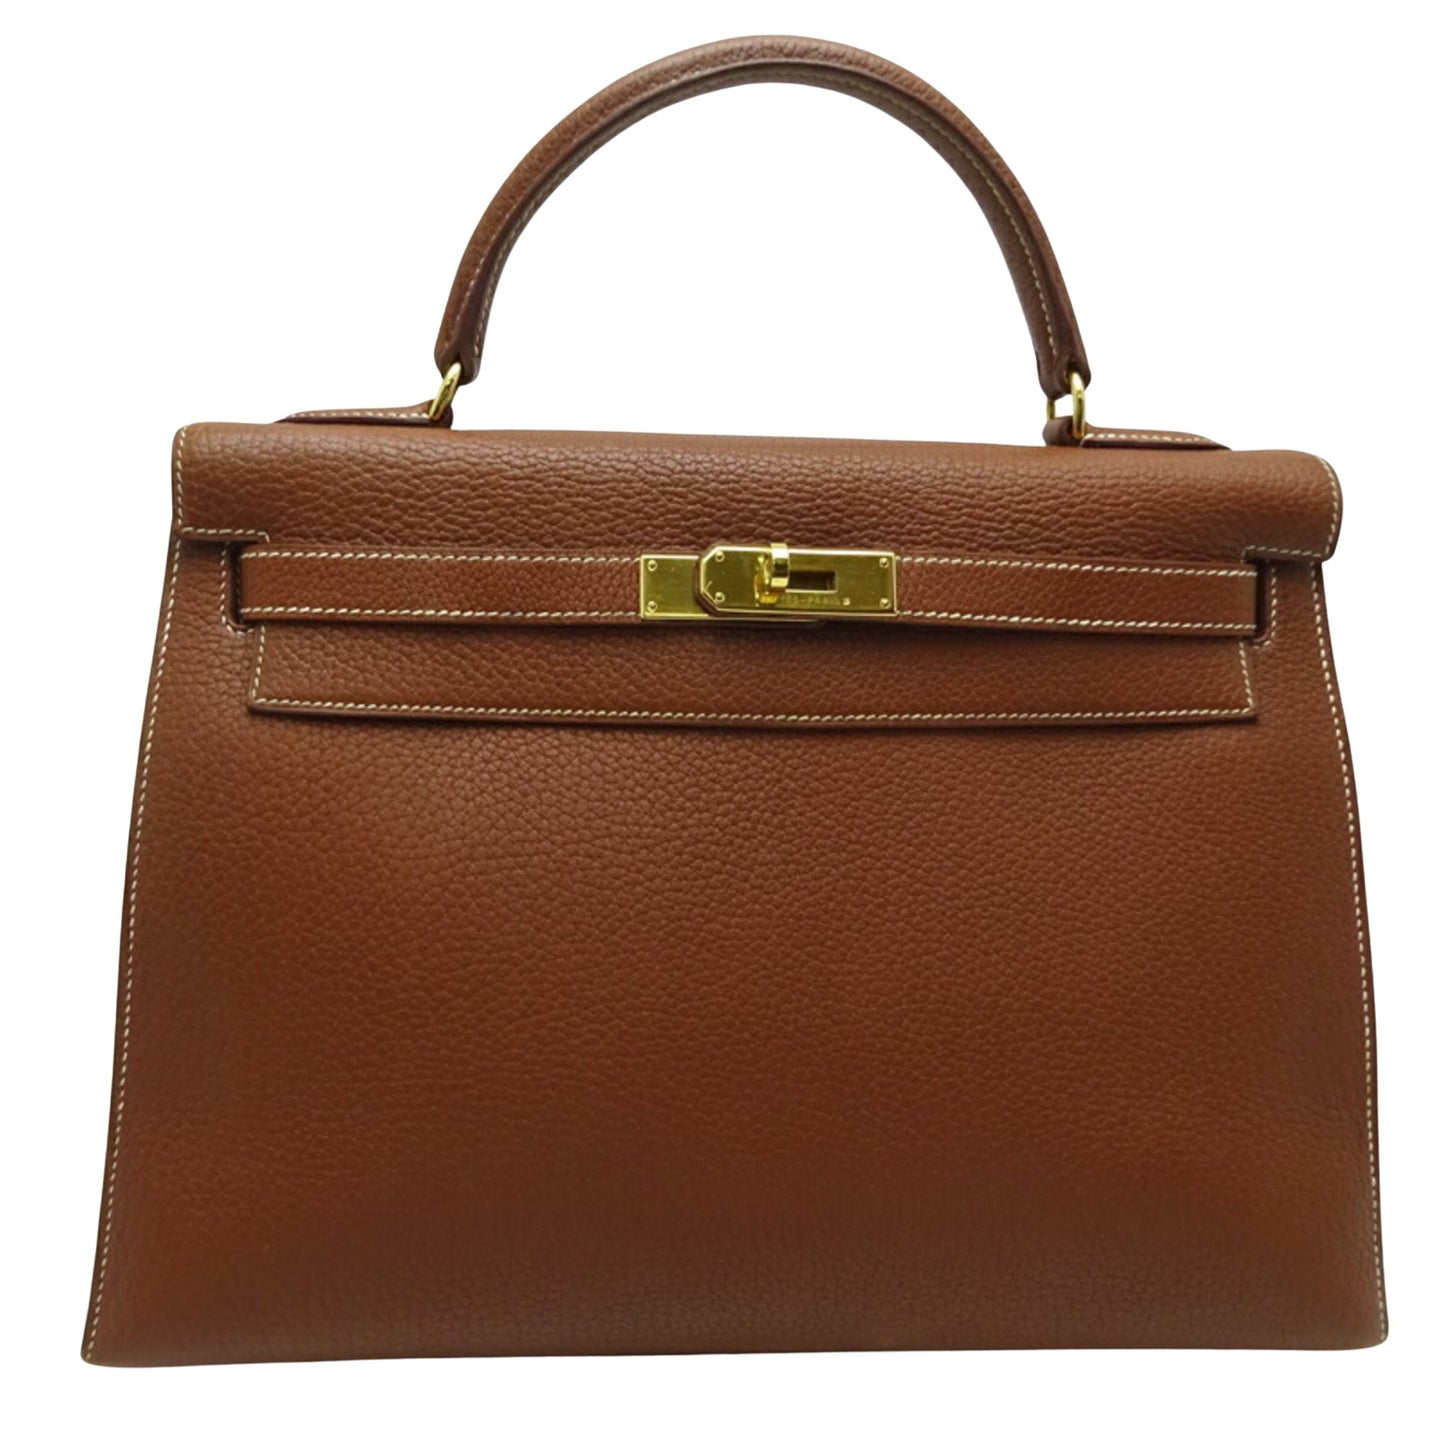 Hermes Kelly 32 Handbag Brown